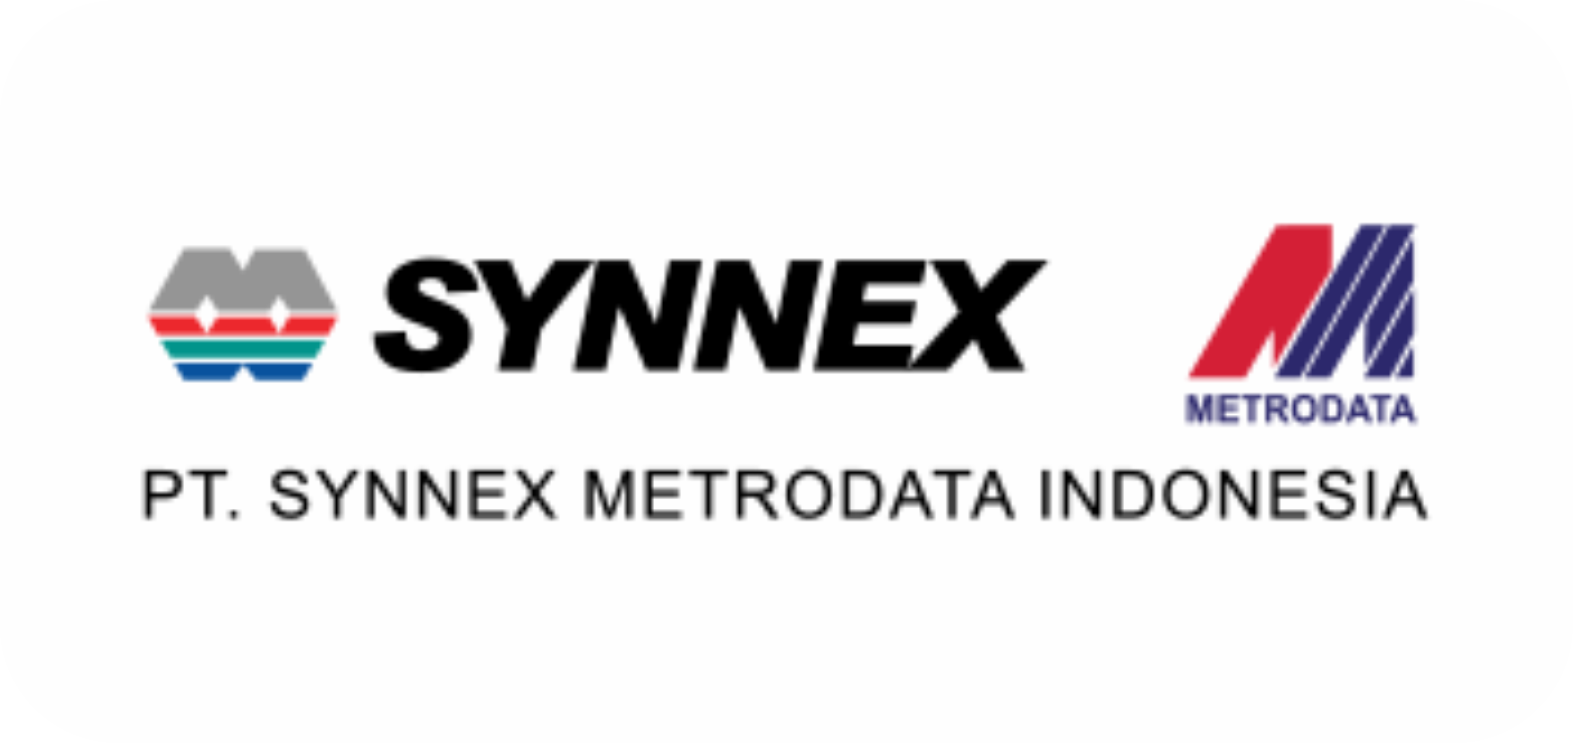 synex metrodata